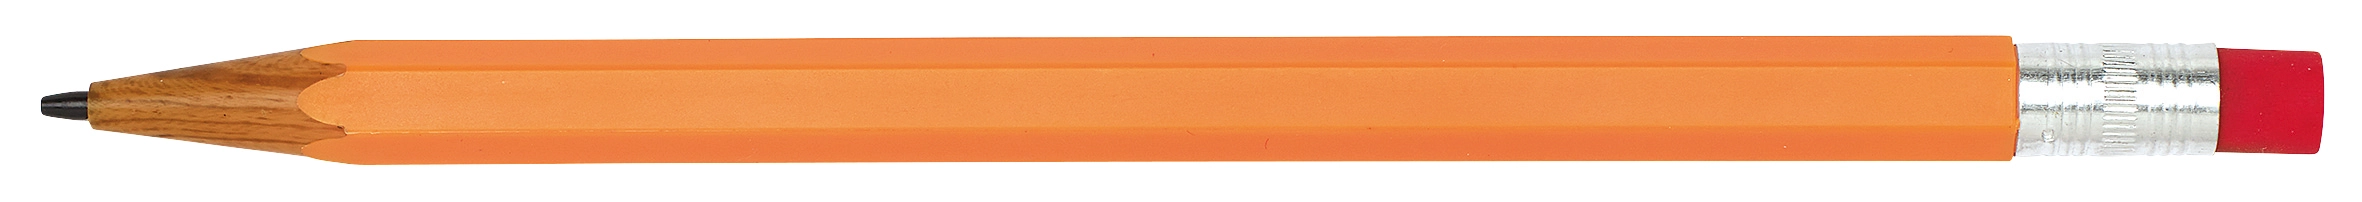 Ołówek automatyczny LOOKALIKE, pomarańczowy 56-1101195 pomarańczowy